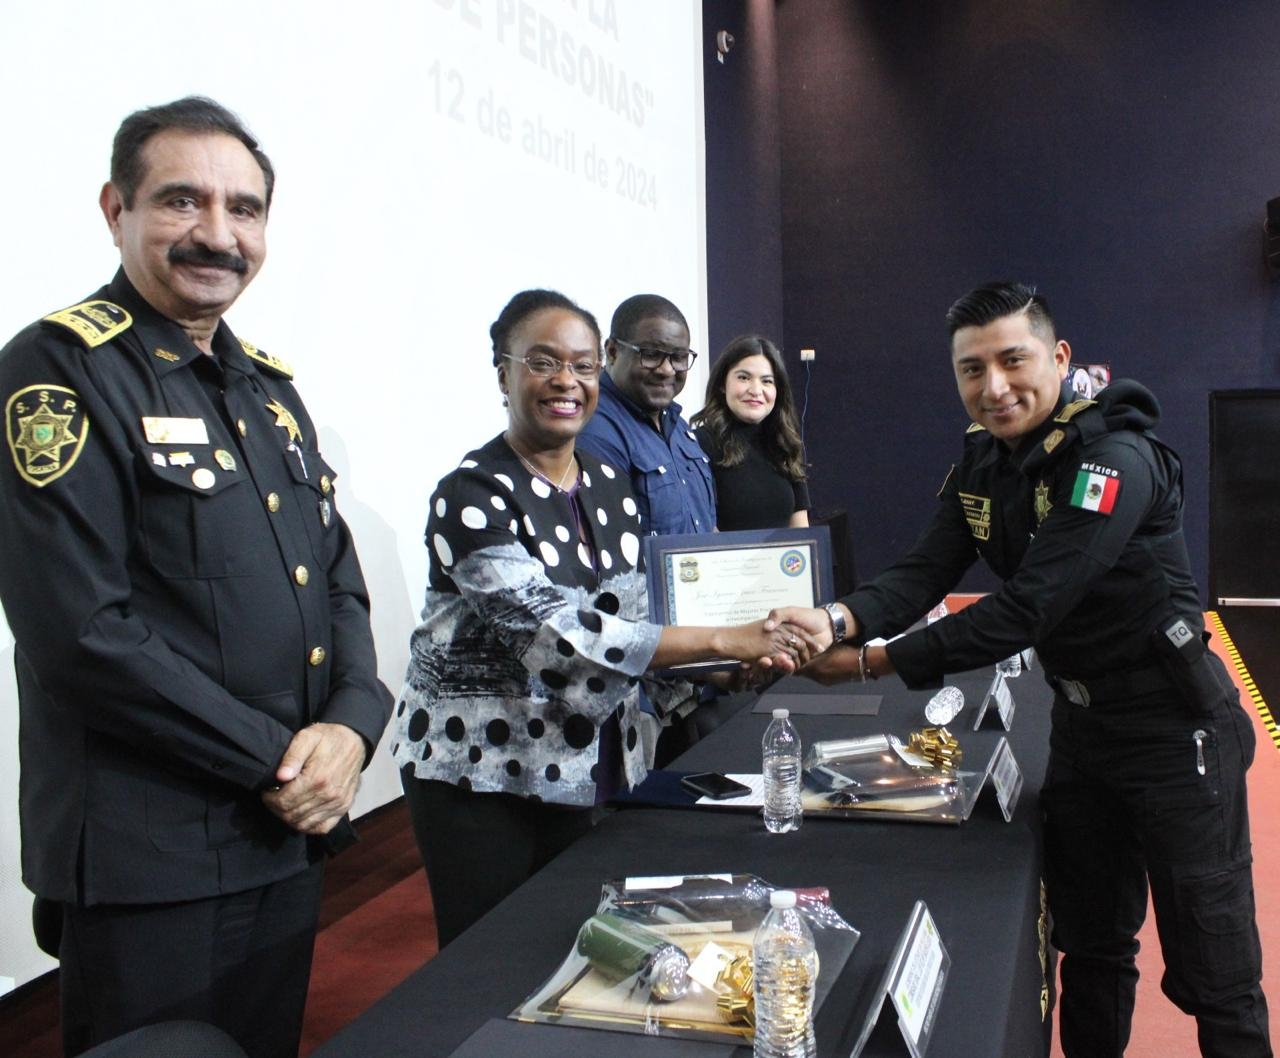 Cónsul de EU en Mérida destaca colaboración de la SSP Yucatán en curso sobre el tráfico de personas